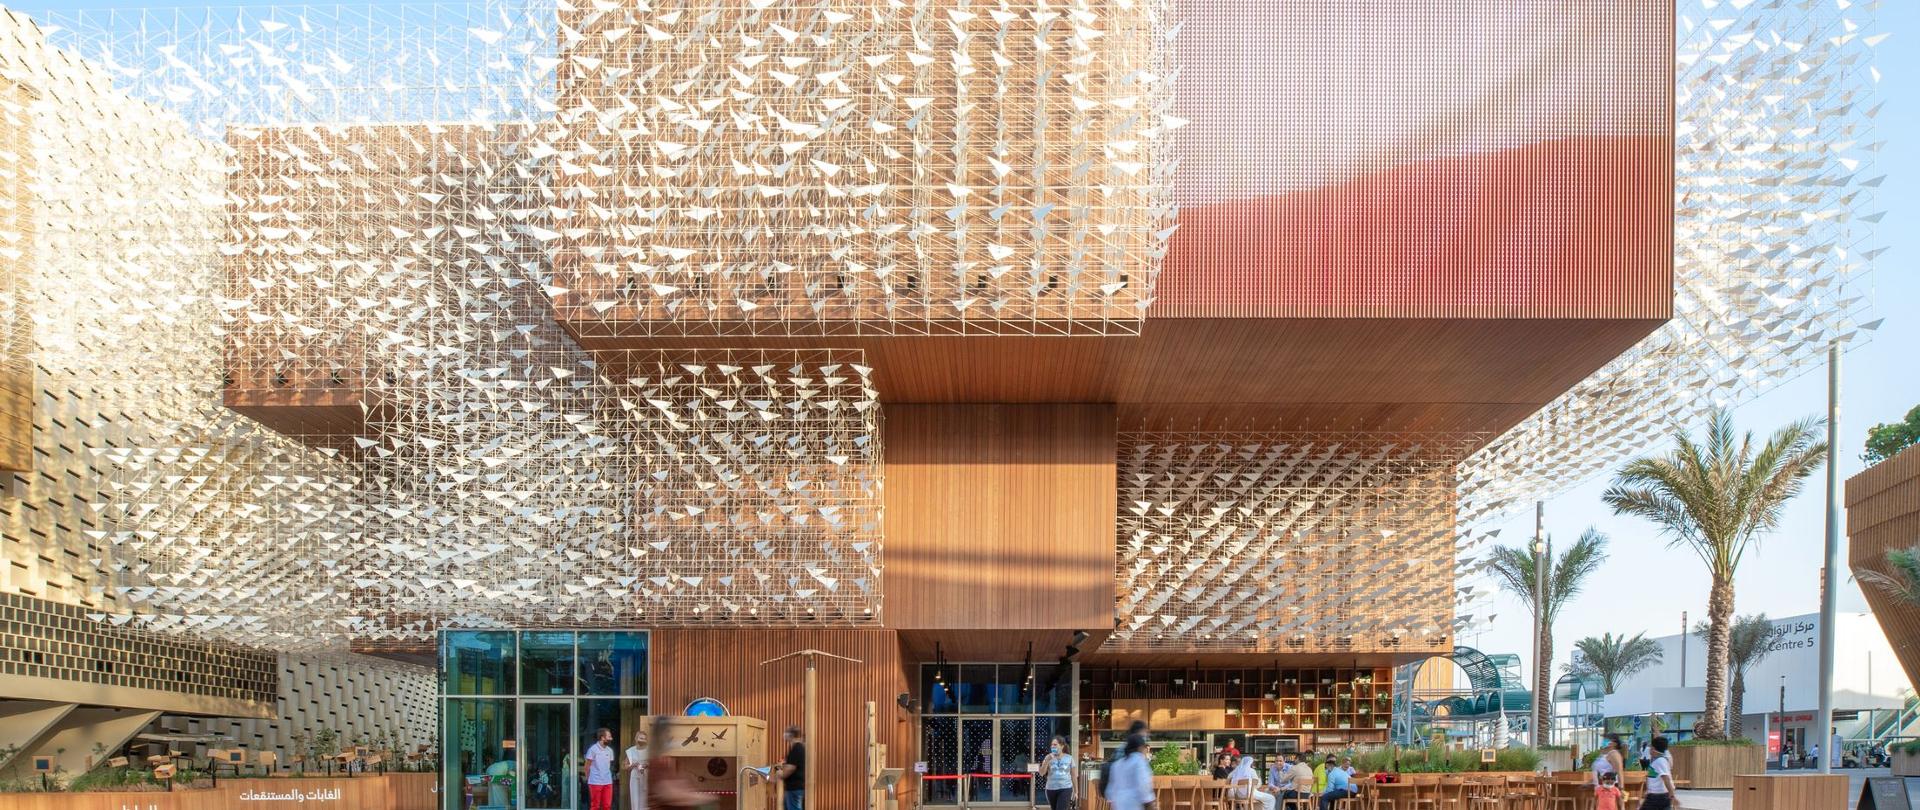 Pawilon Polski na Expo 2020 Dubaj - widok na zewnątrz - pawilon zbudowany z drewna z metalowymi ażurowymi konstrukcjami zdobiącymi jego elewację